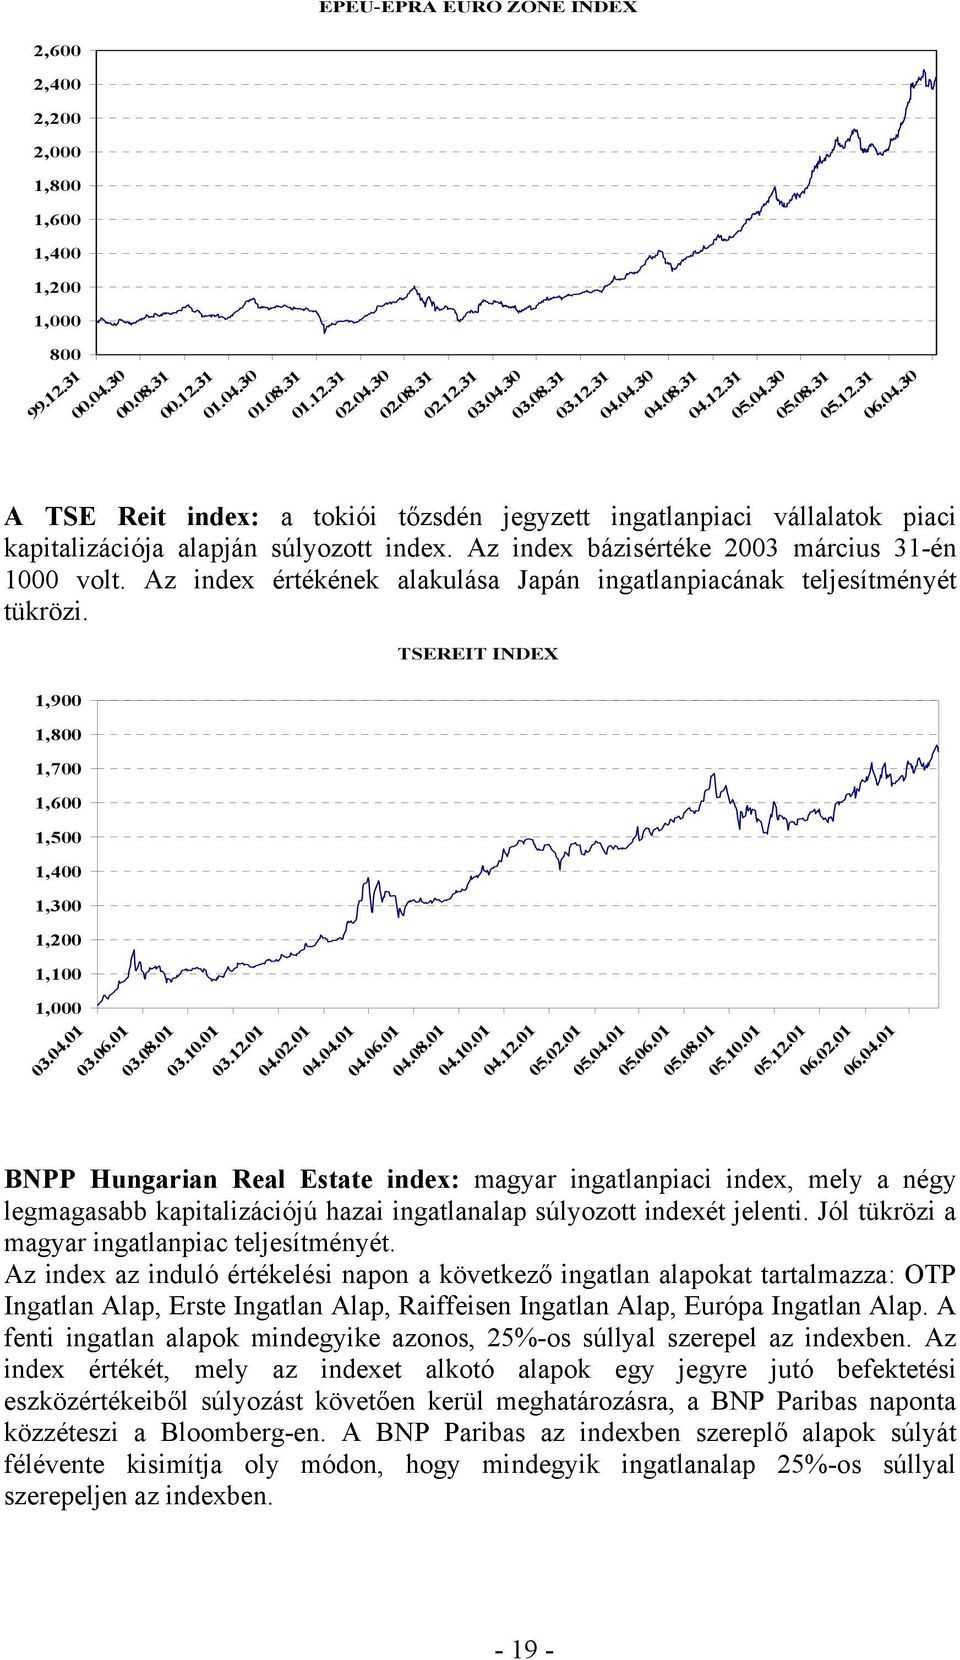 Az index bázisértéke 2003 március 31-én 1000 volt. Az index értékének alakulása Japán ingatlanpiacának teljesítményét tükrözi.